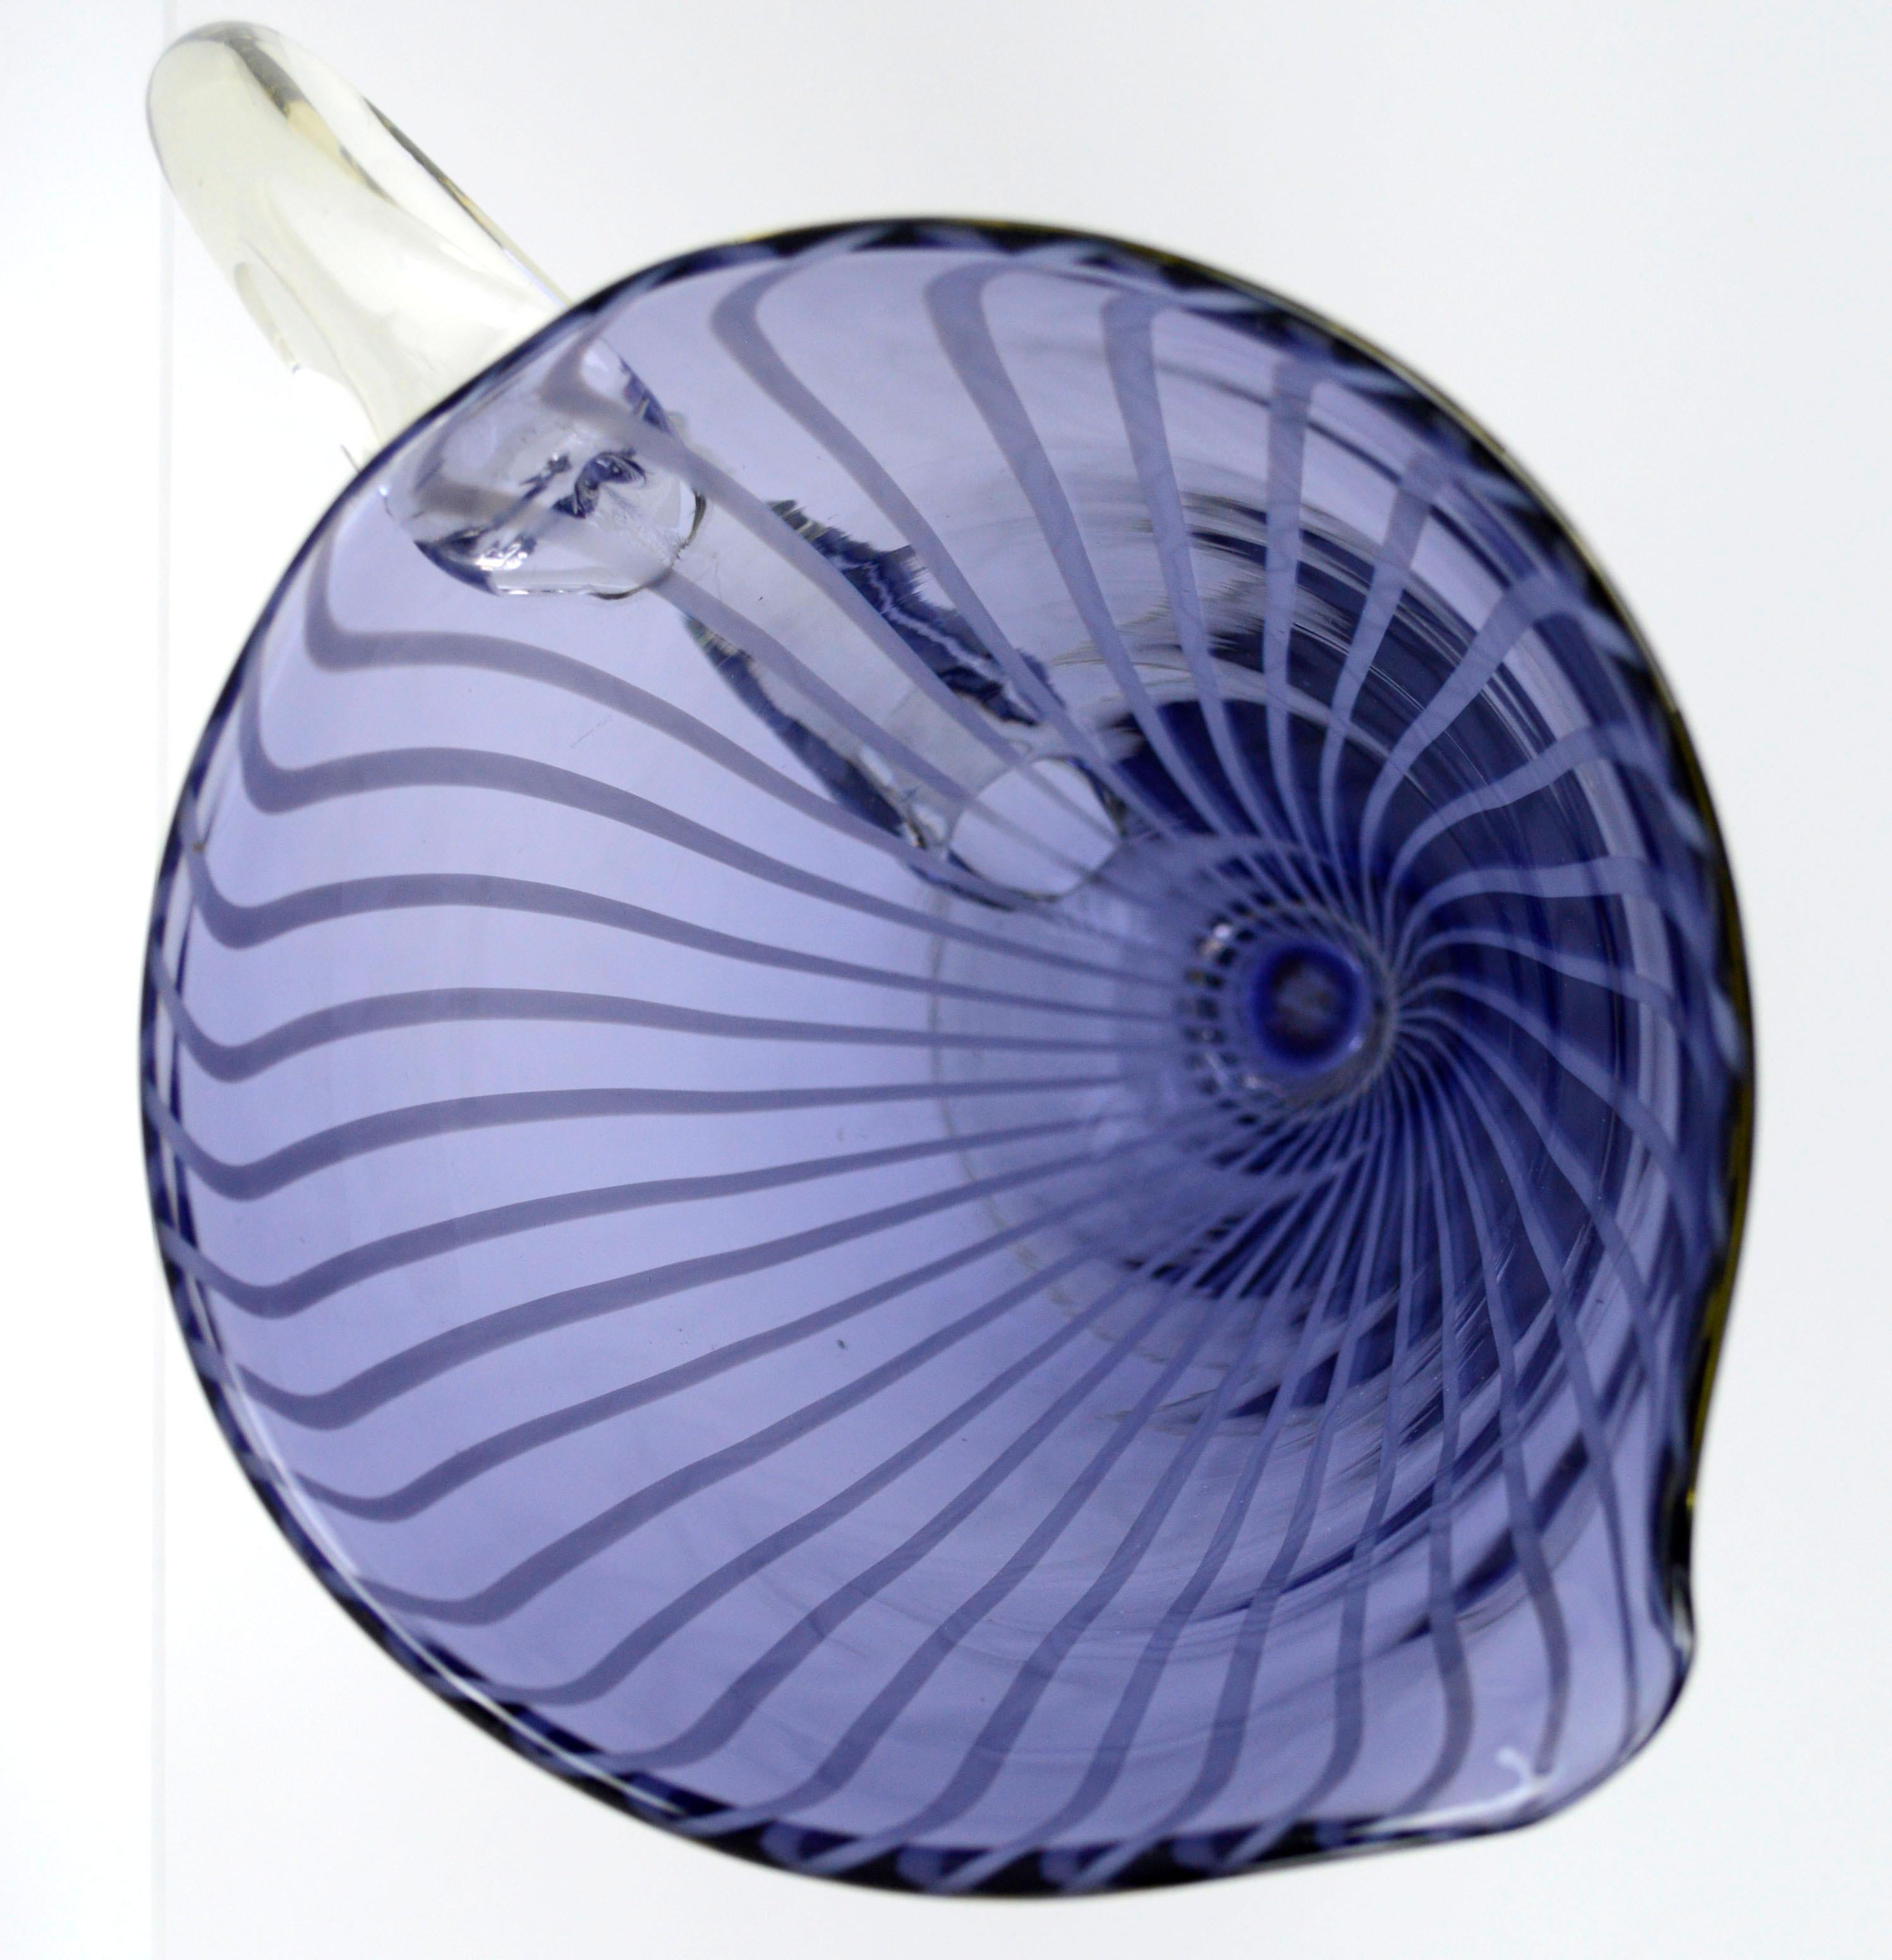 cobalt blue glass pitcher vintage